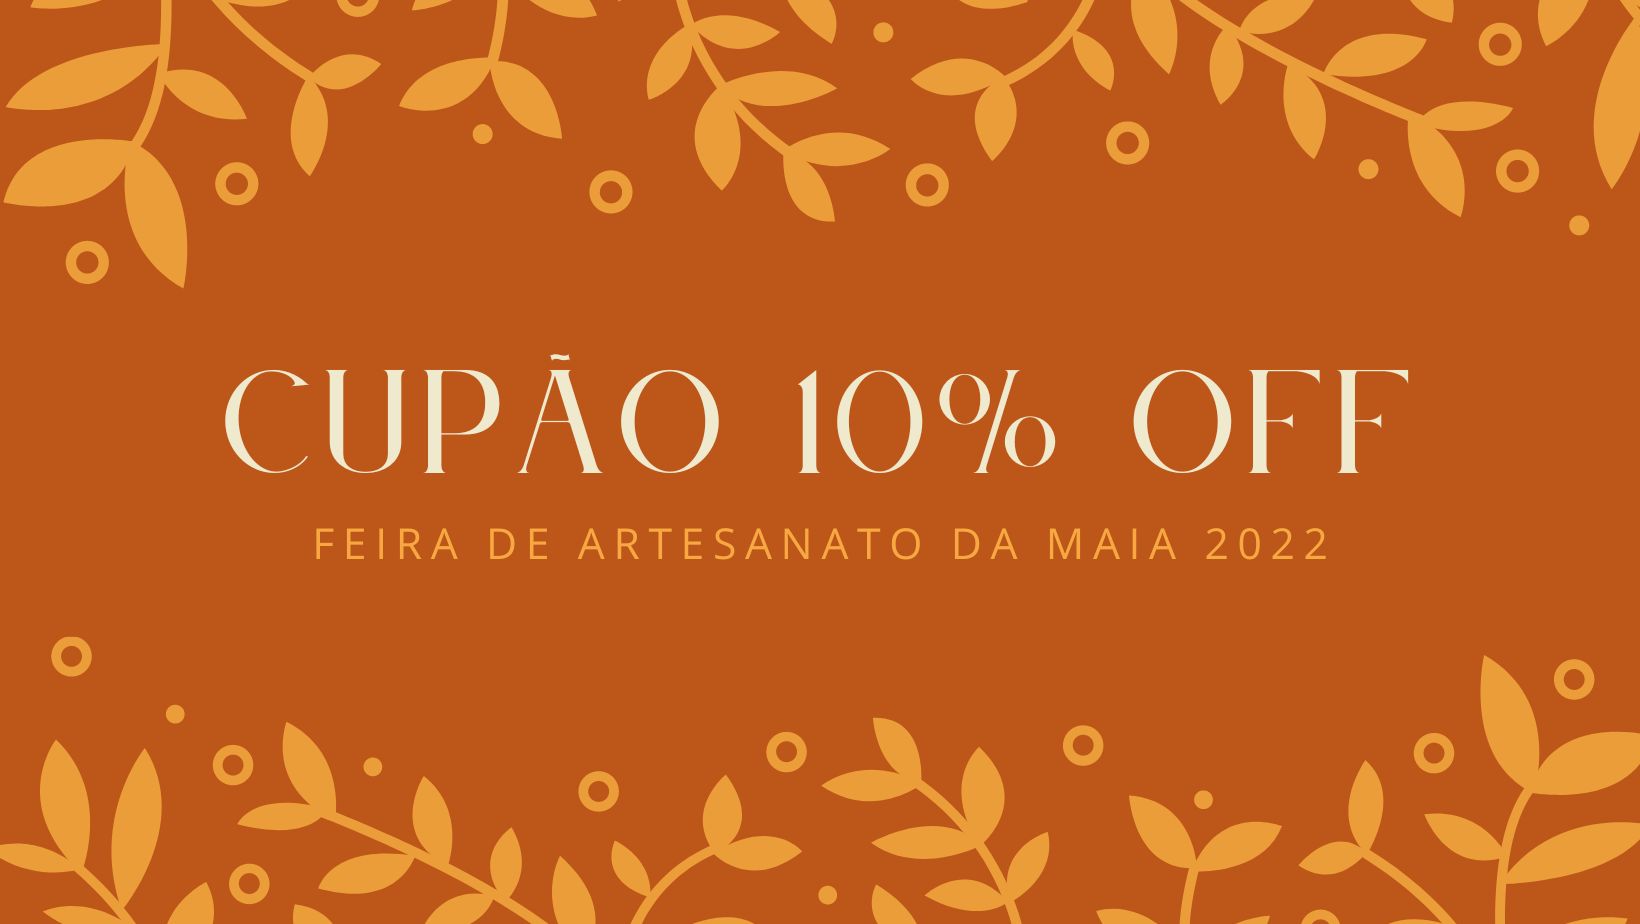 *CUPÃO 10% OFF* A Celtiana vai estar presente na Feira de Artesanato da Maia, de 2 a 11 de julho de 2022!